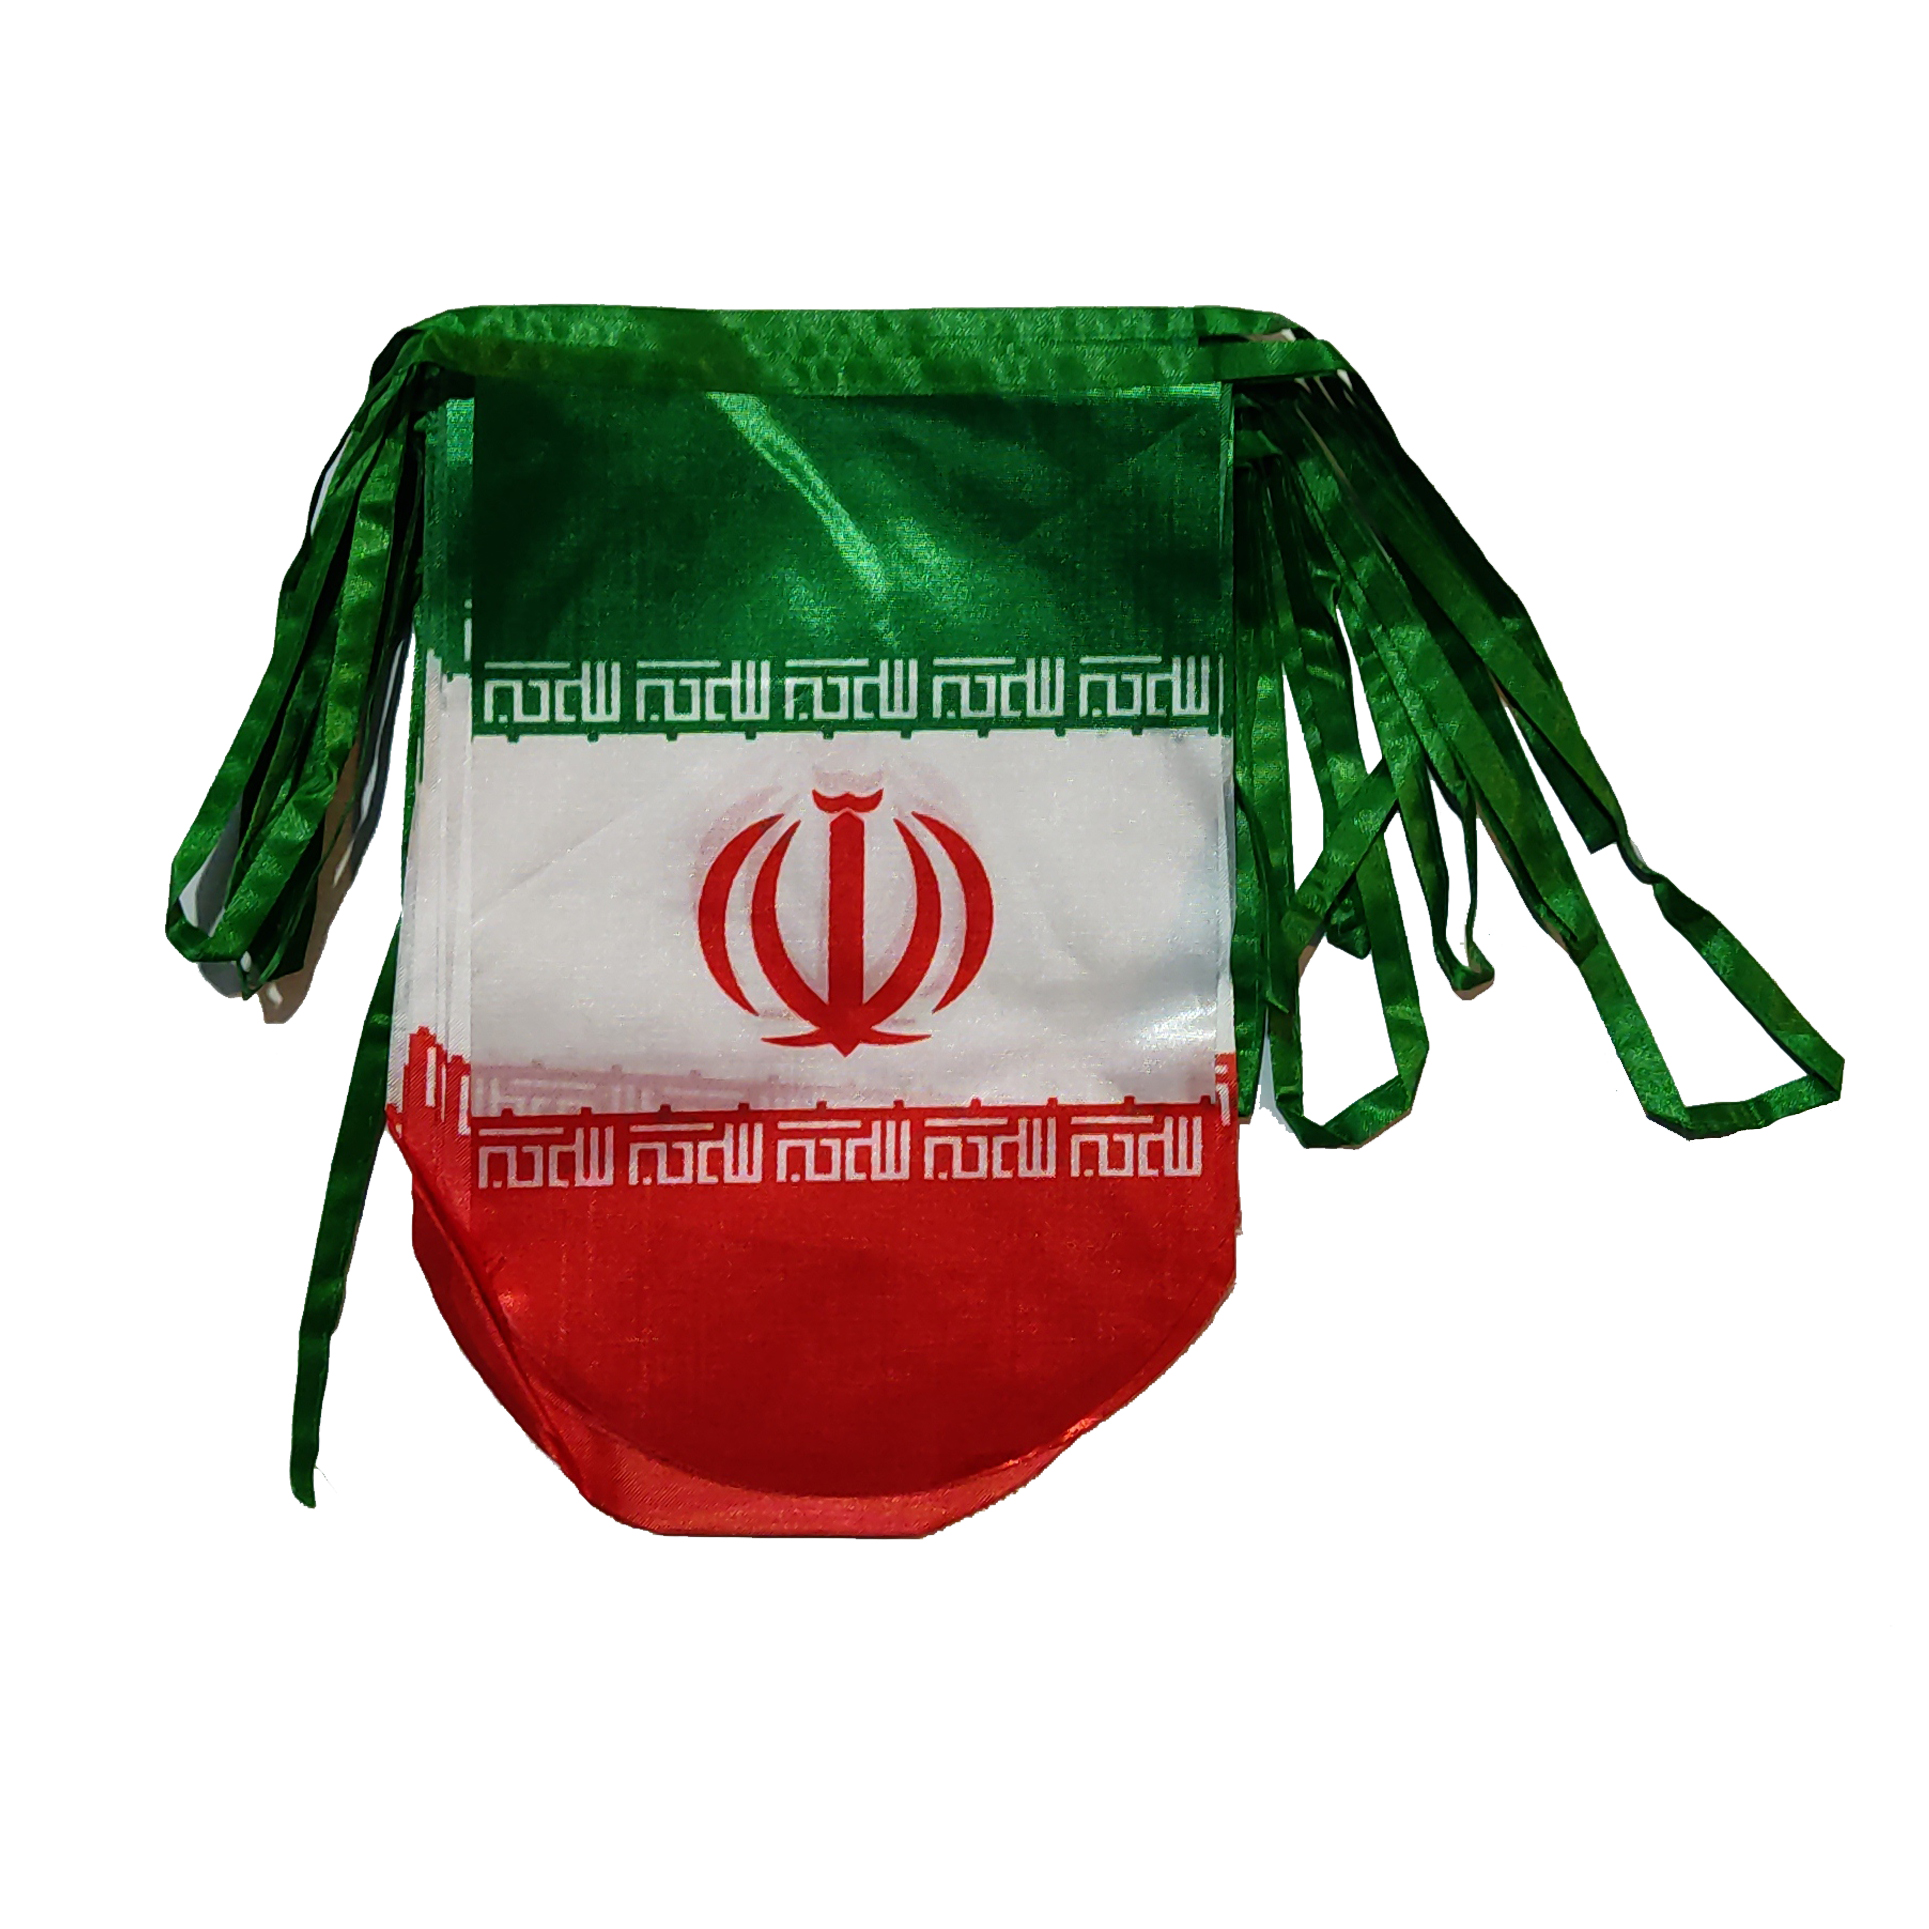 پرچم مدل ریسه طرح ایران هلالی کد Rh 1001